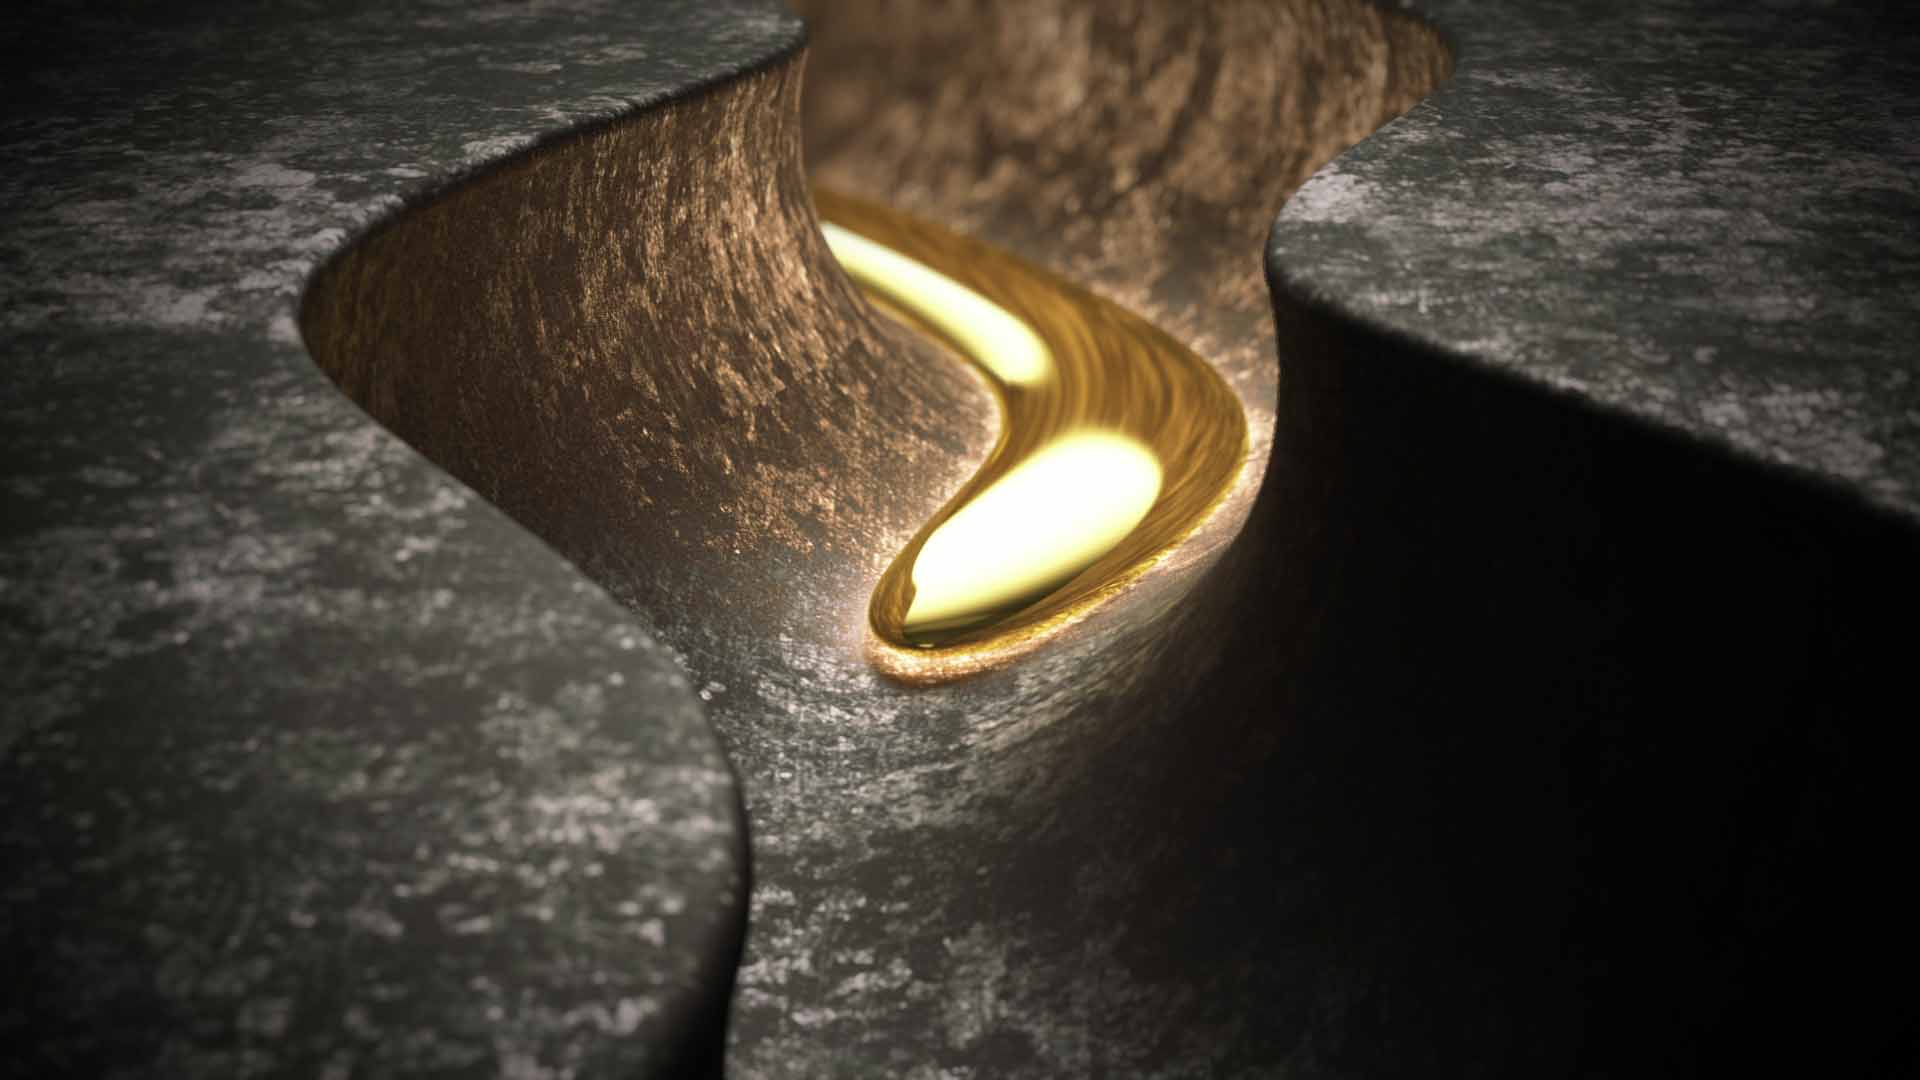 CG liquid gold flows through a channel